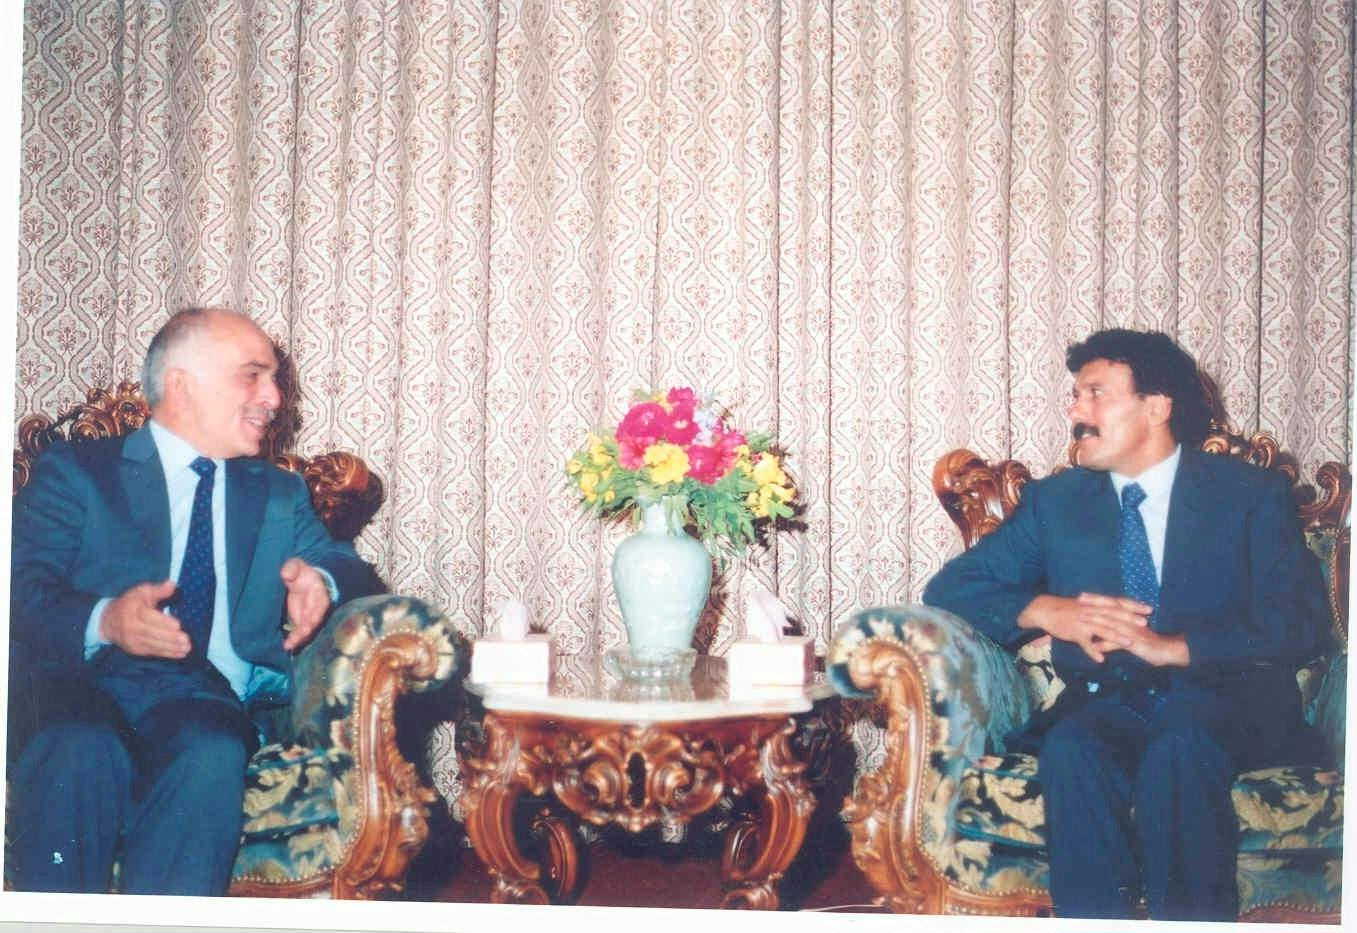 زيارة الحسين بن طلال ملك المملكة الأردنية الهاشمية 17-03-1988م